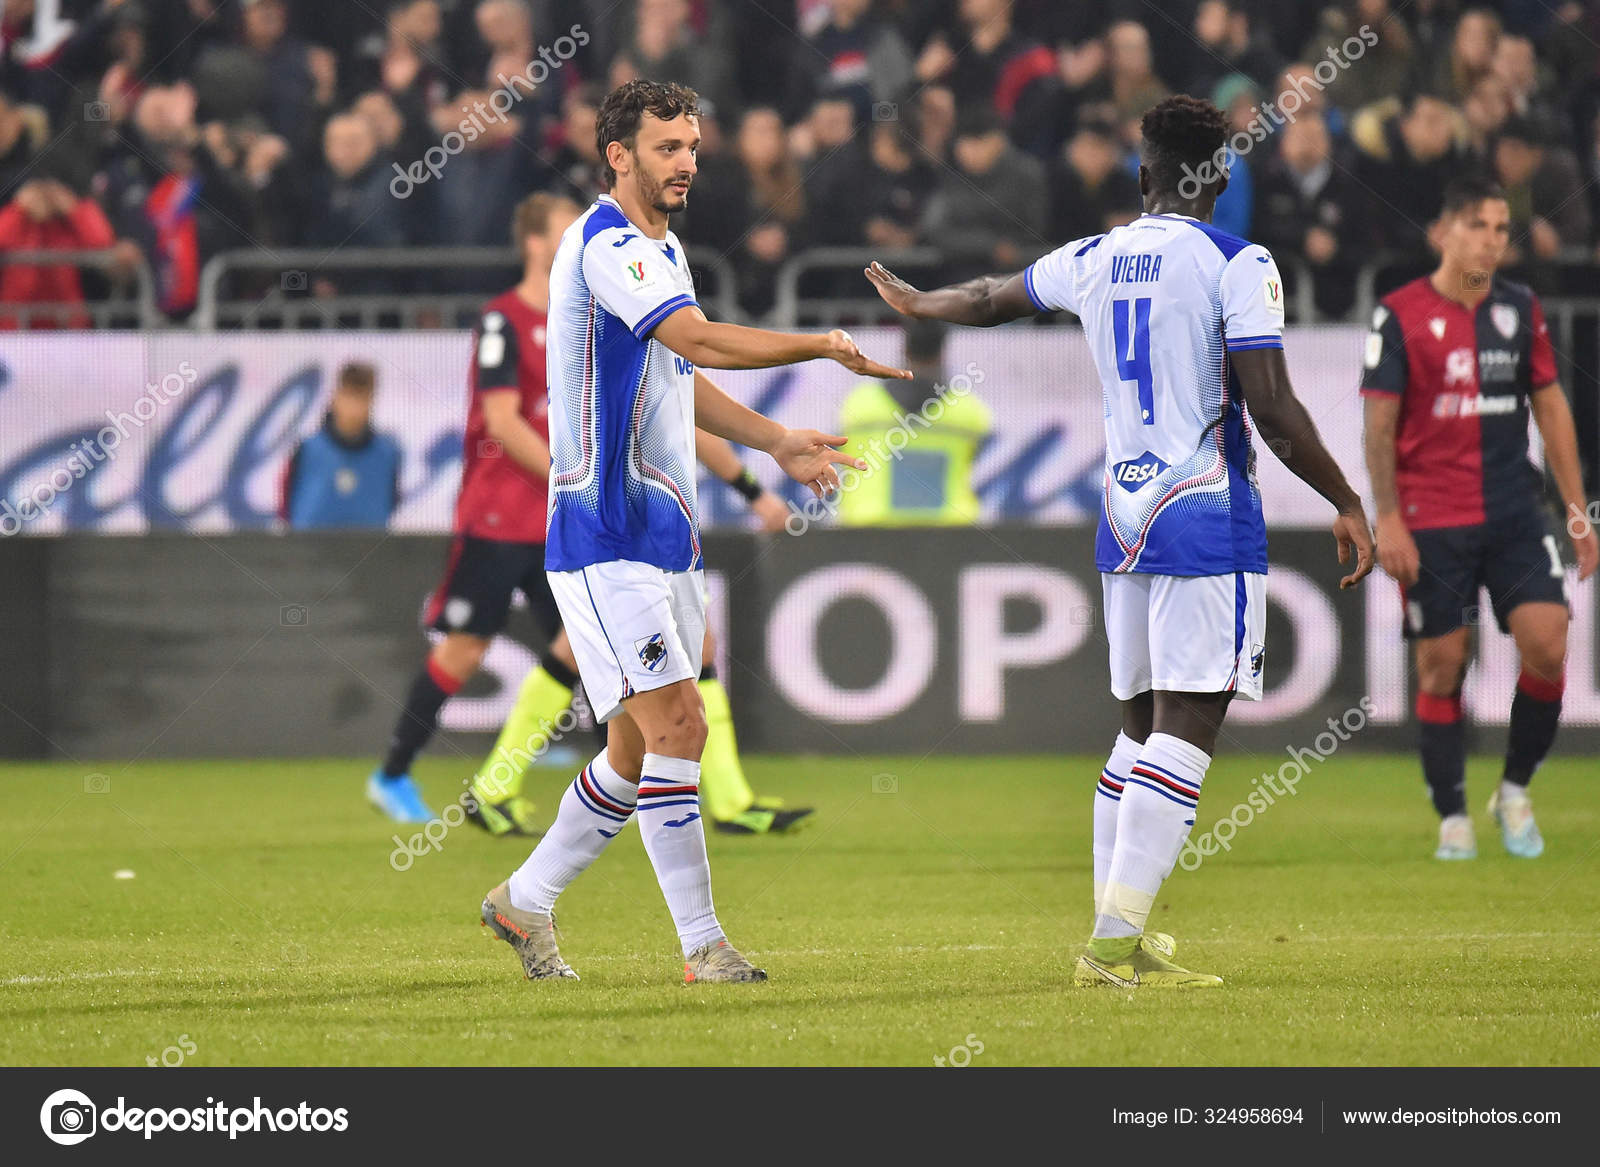 Taça de Itália: Sampdoria apura-se nos penáltis, Cagliari eliminado